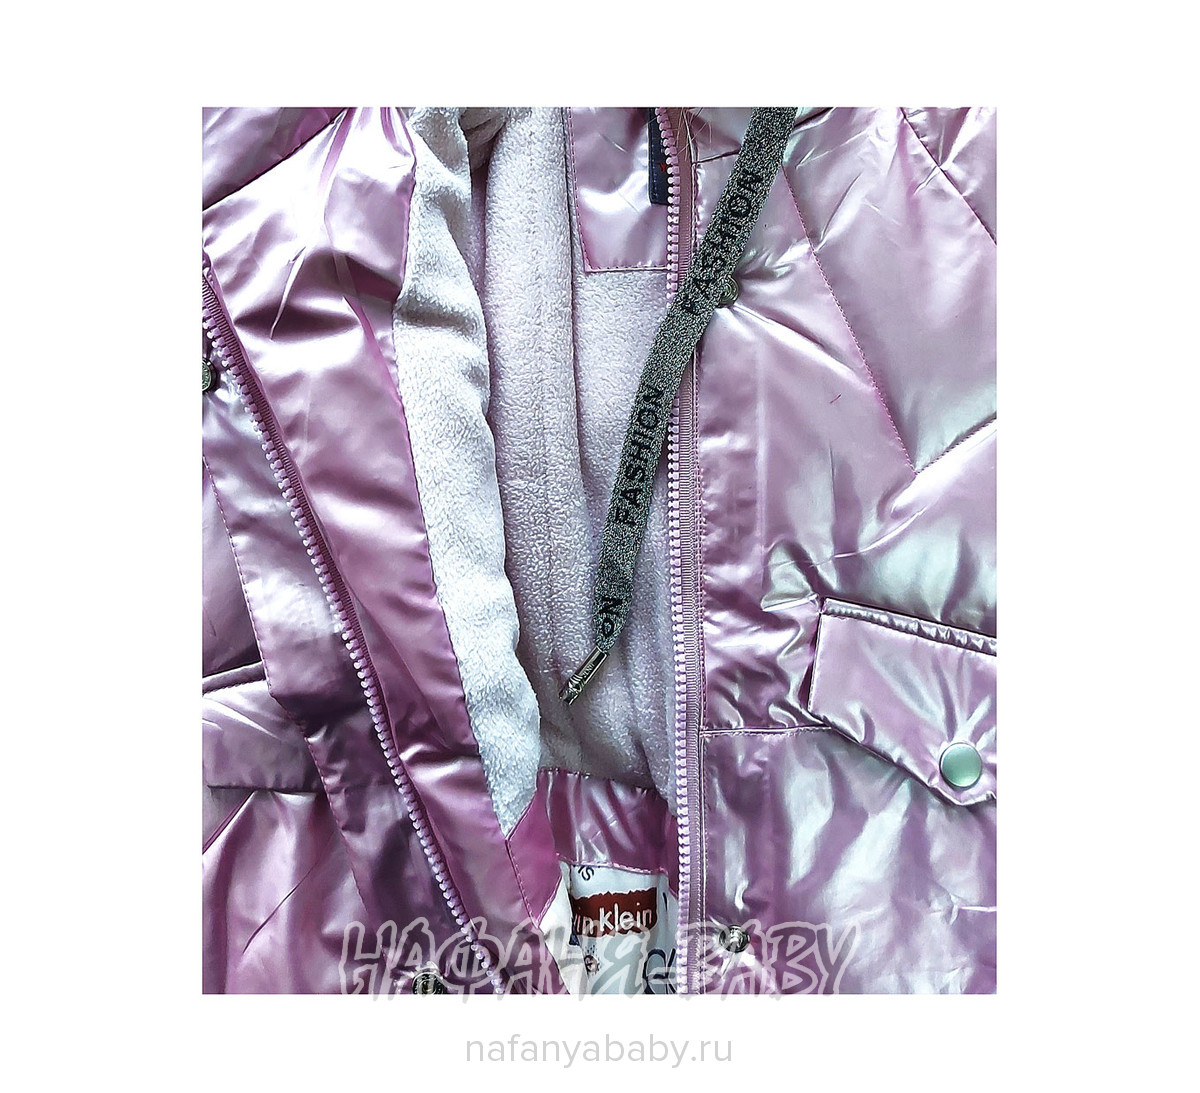 Зимняя куртка  YOI LI арт: 226, 1-4 года, 5-9 лет, цвет розовый, оптом Китай (Пекин)